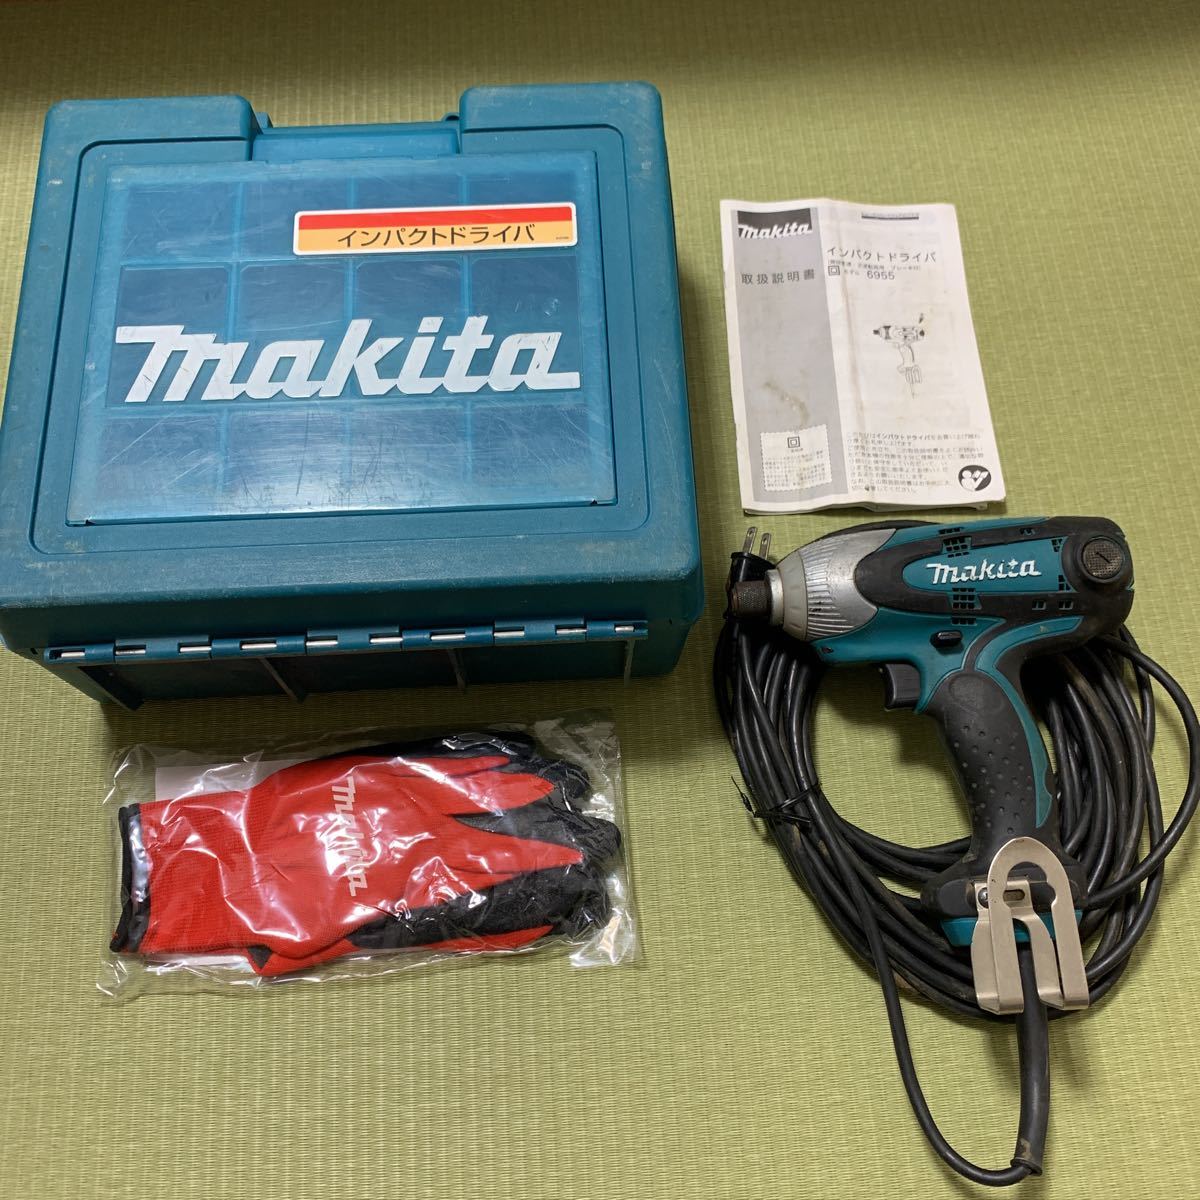 マキタ インパクトドライバー makita 6955SPK 10mコード おまけ粗品付